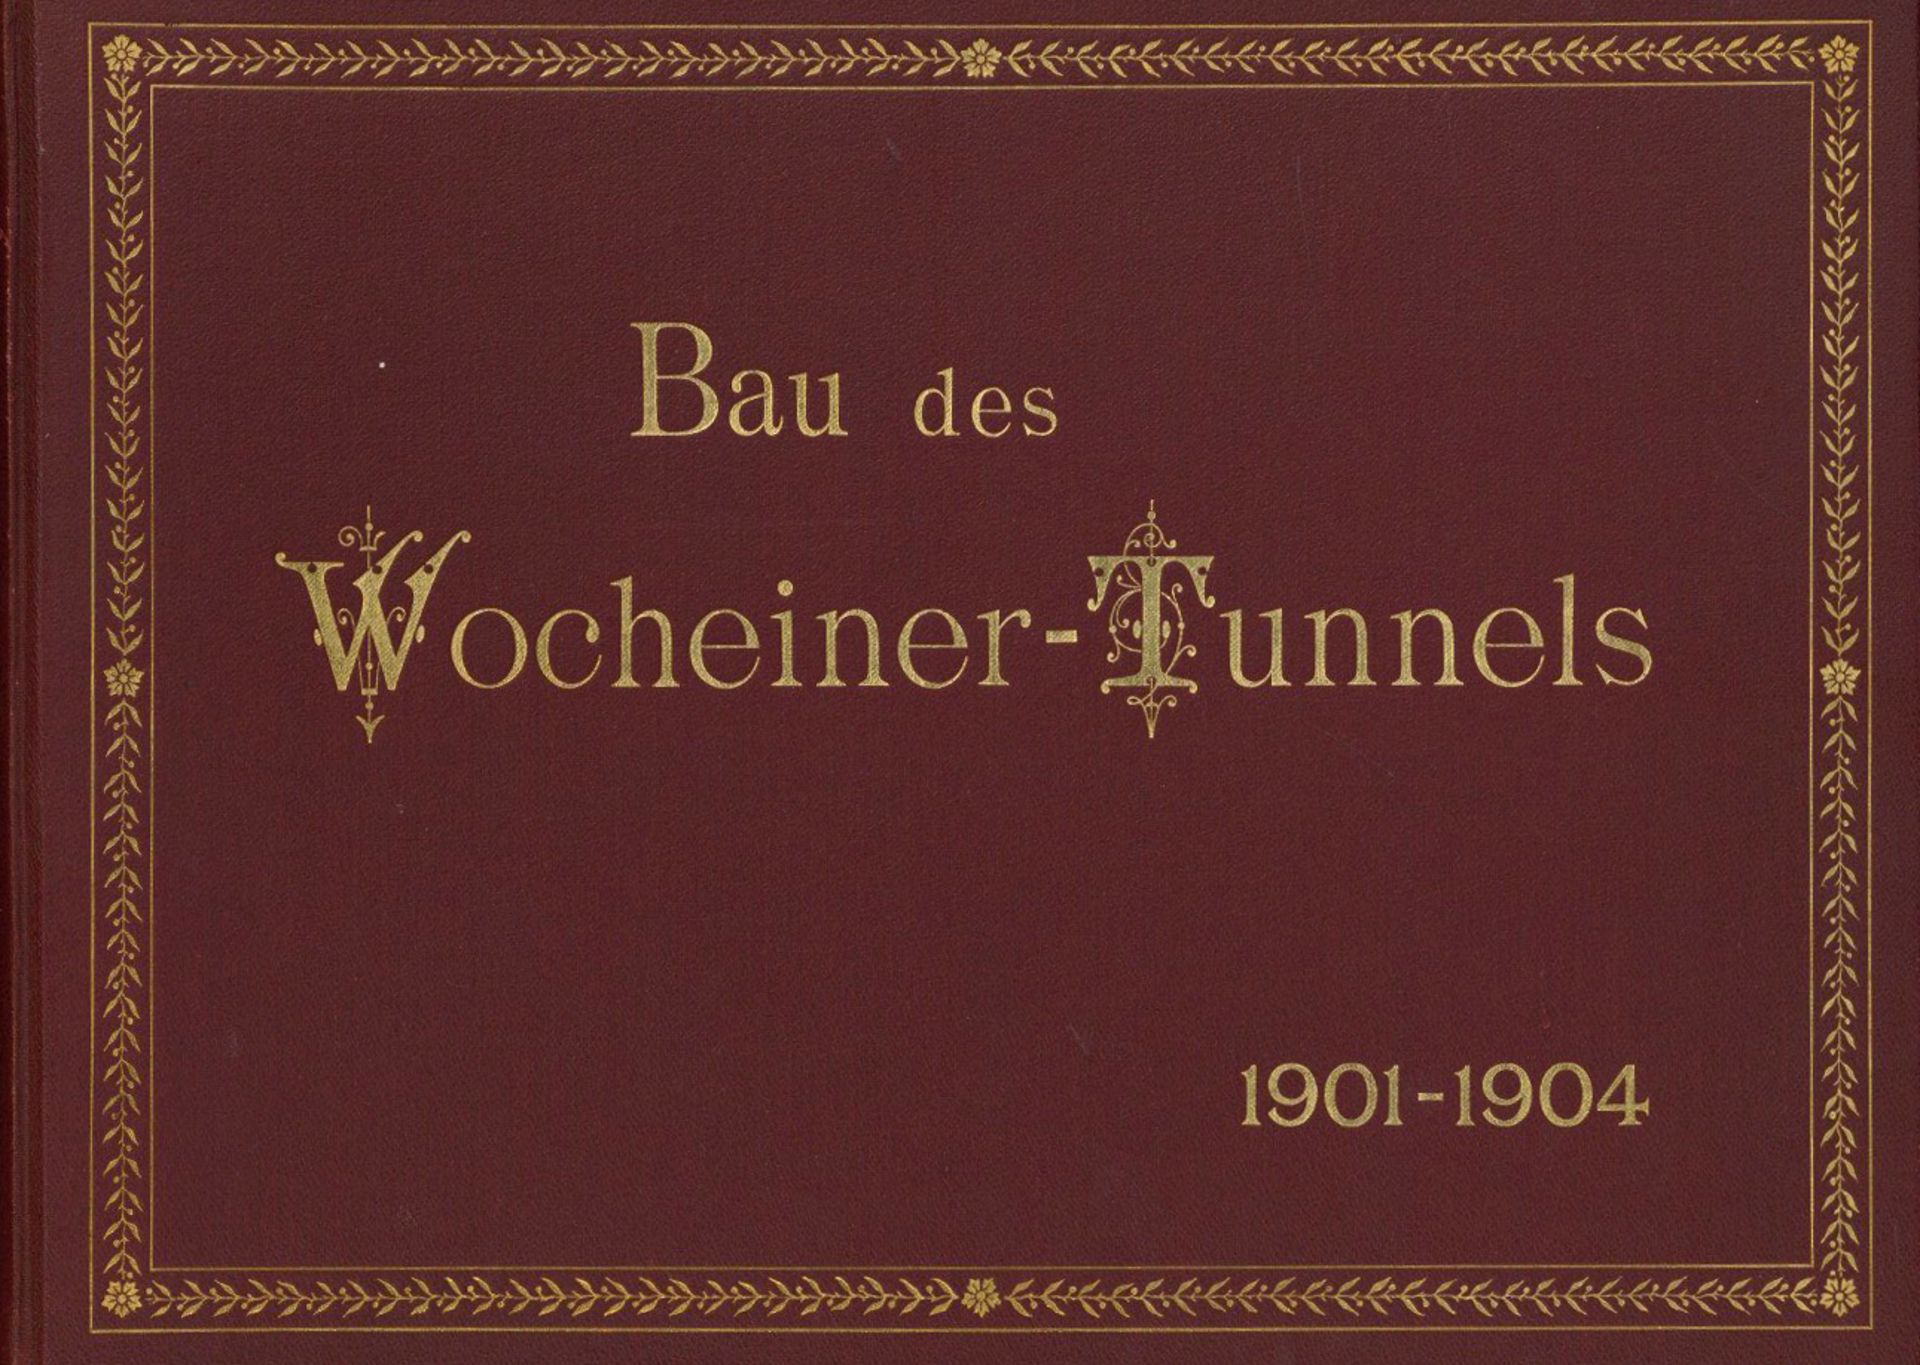 Architektur Buch Bau des Wocheiner Tunnels 1901-1904 von Photogr. Beer, Alois Klagenfurt, 34